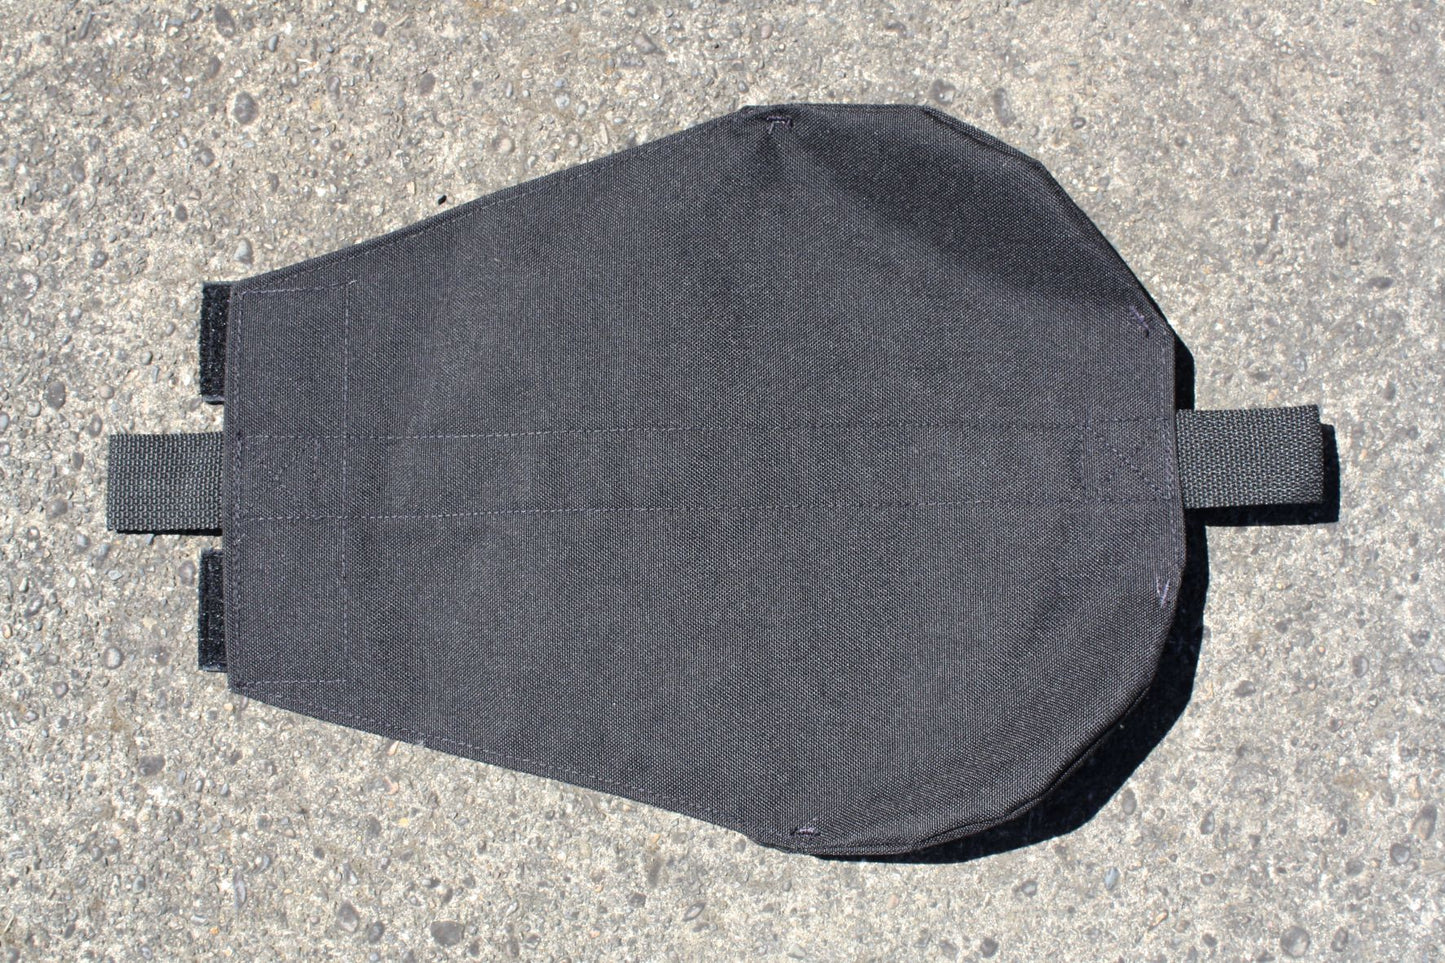 Ninja Net - Replacement Carry Bag